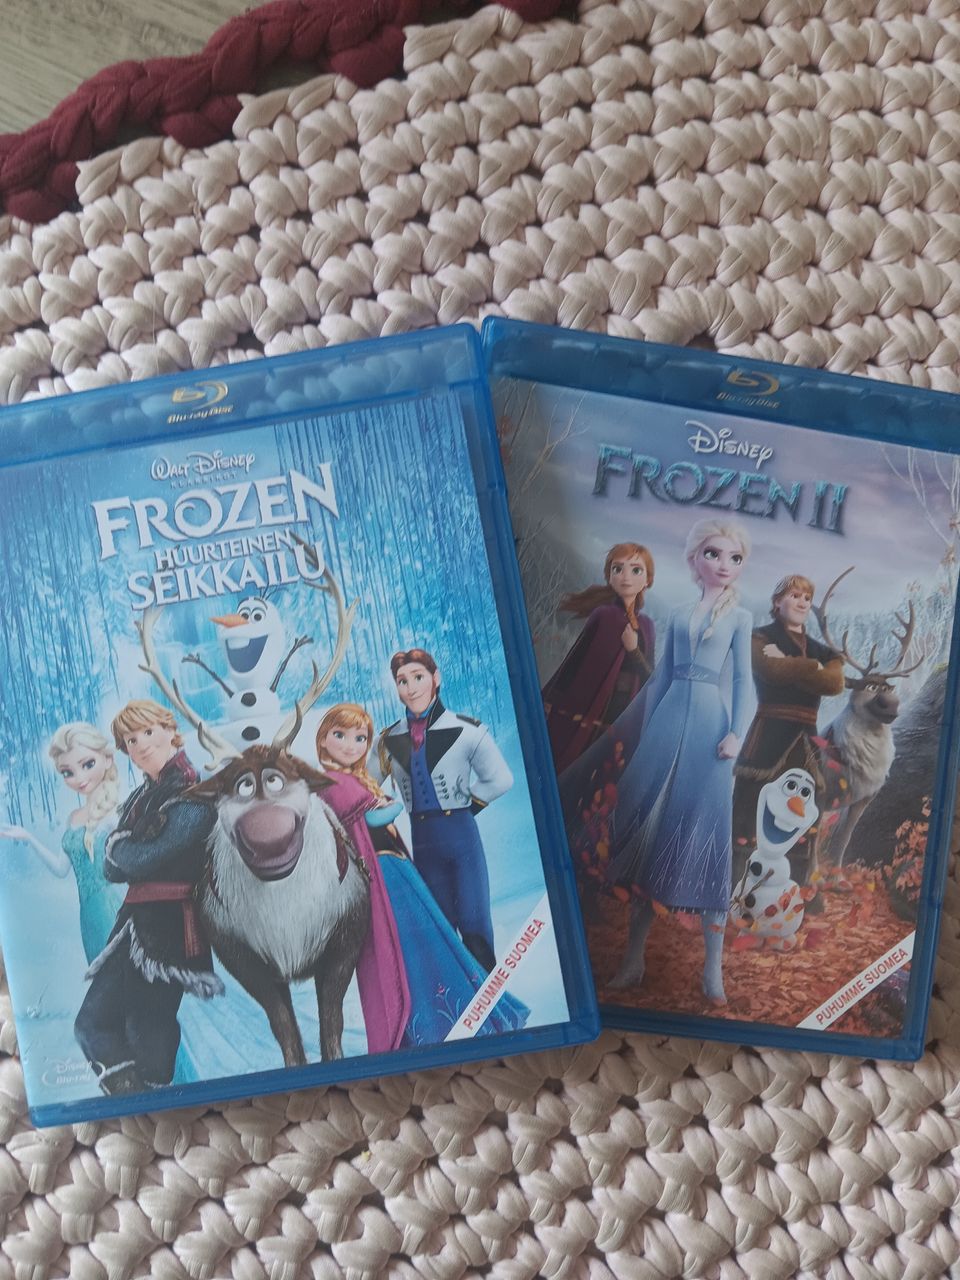 Frozen 1 ja 2 blue ray elokuvat